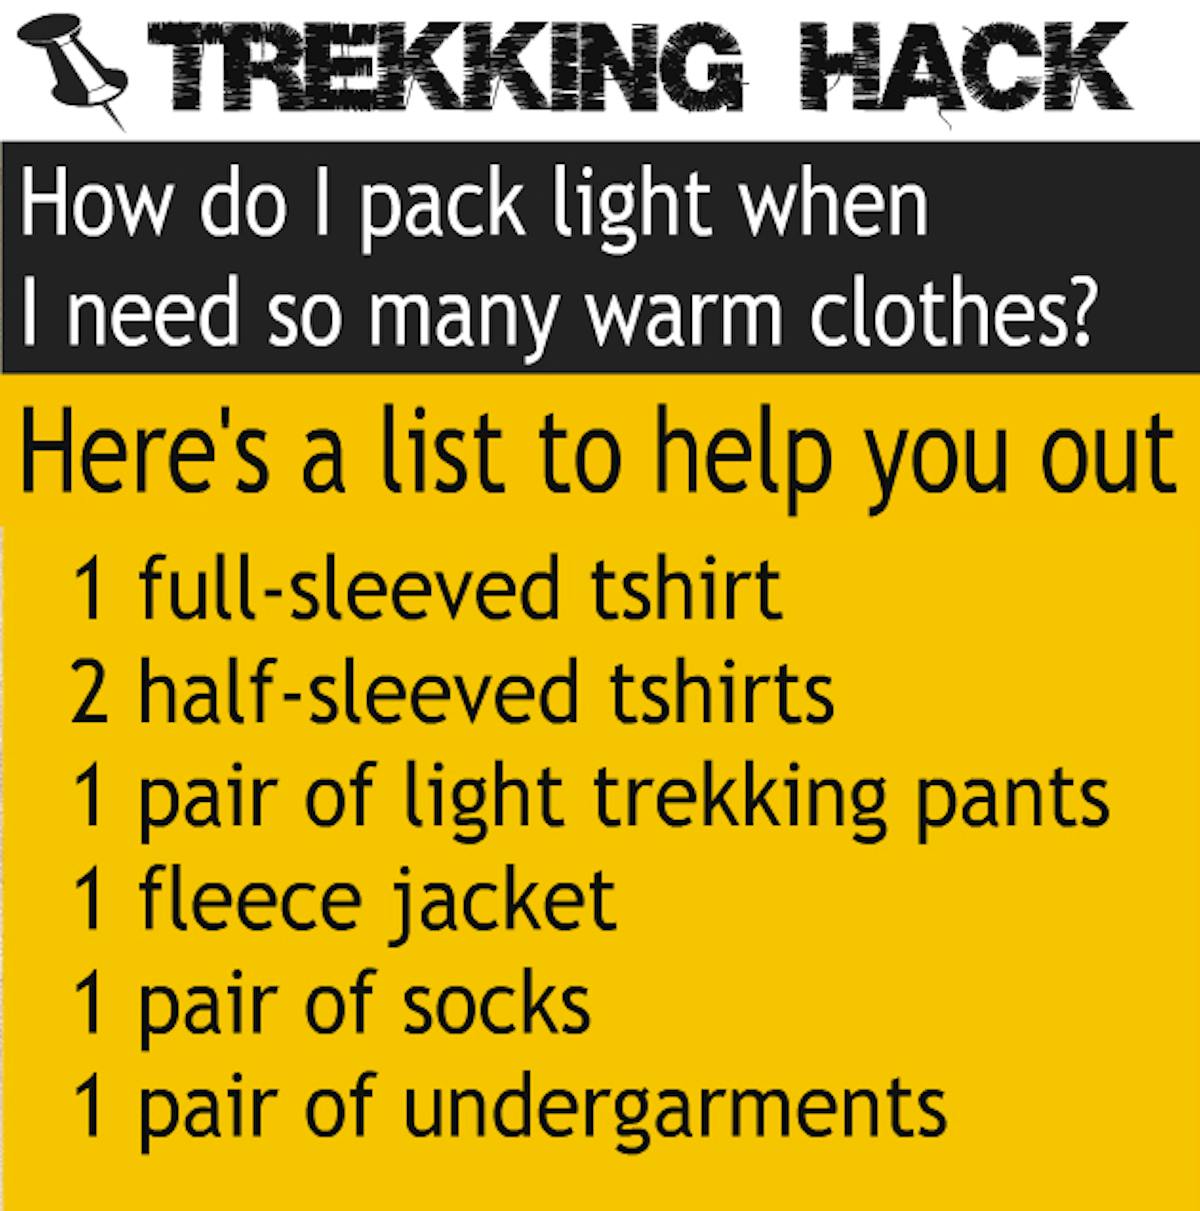 trekking backpack hack